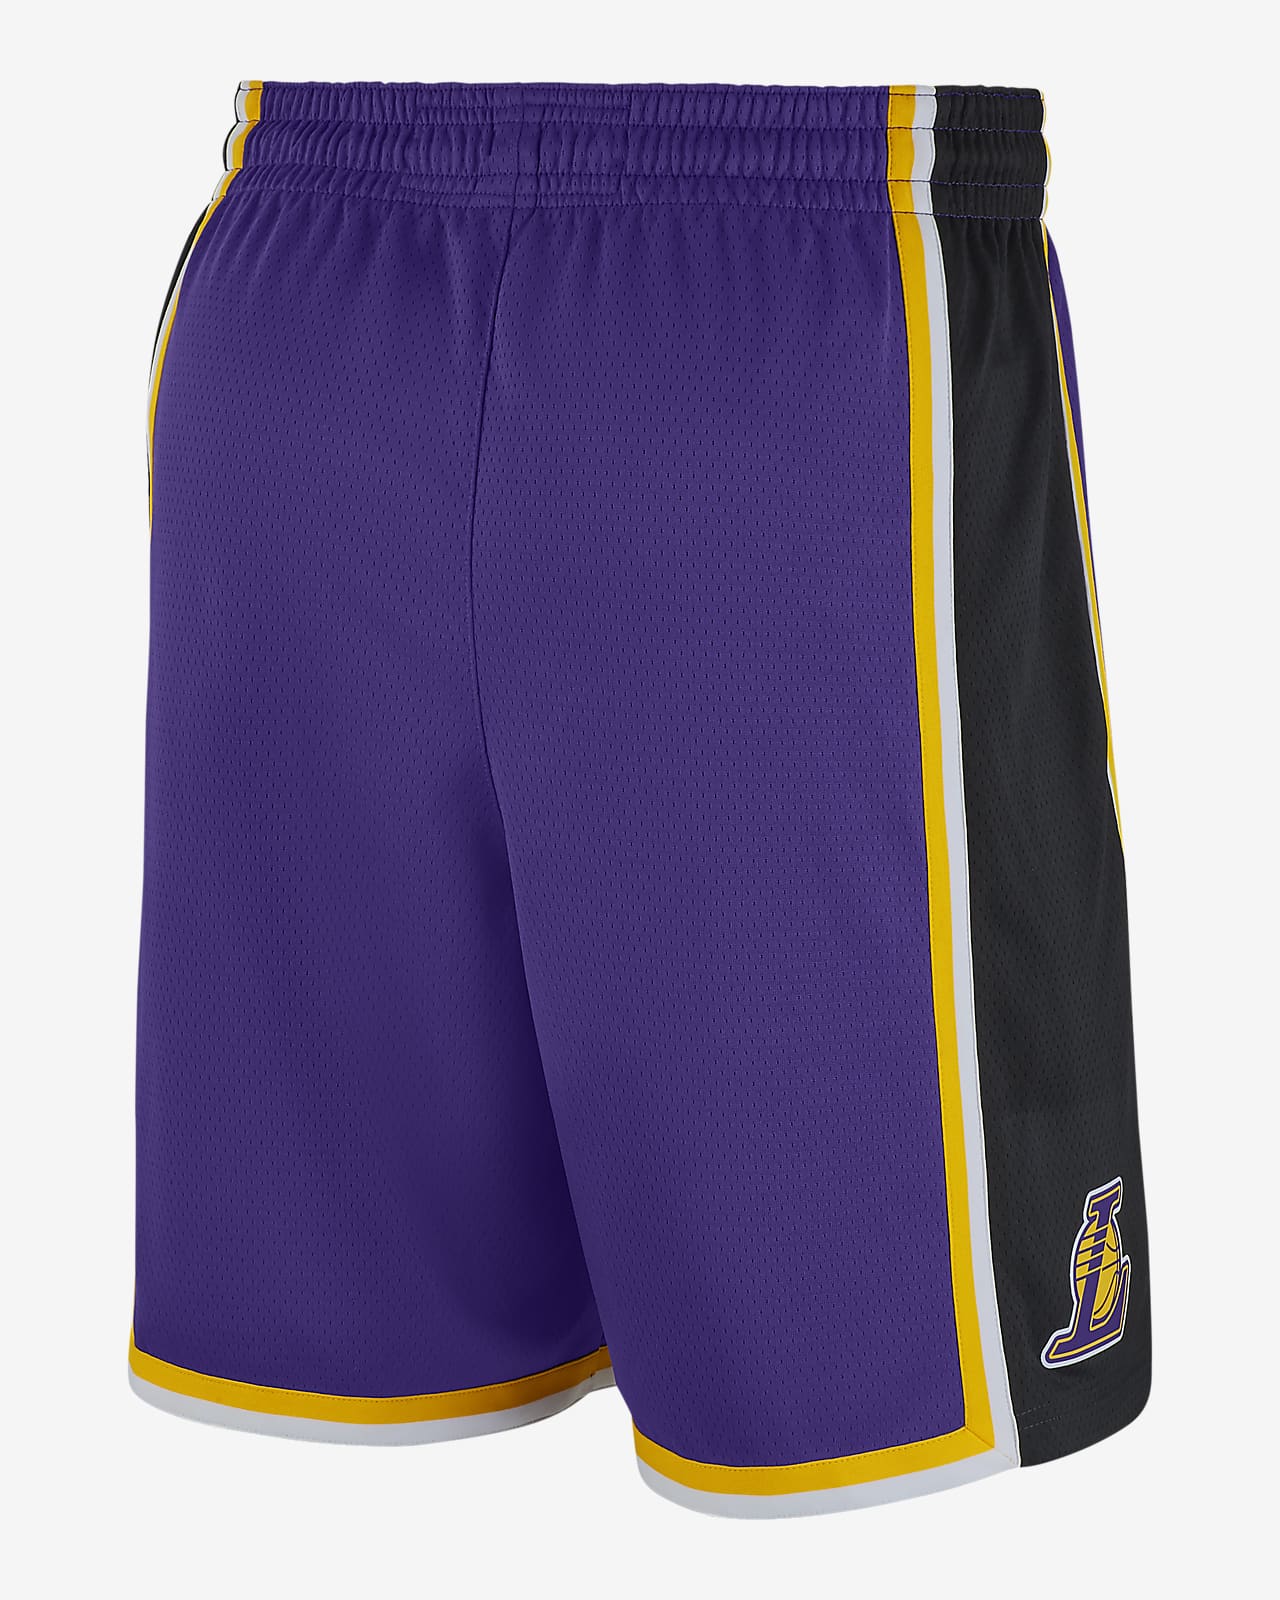 Jordan NBA Swingman Shorts. Nike NZ